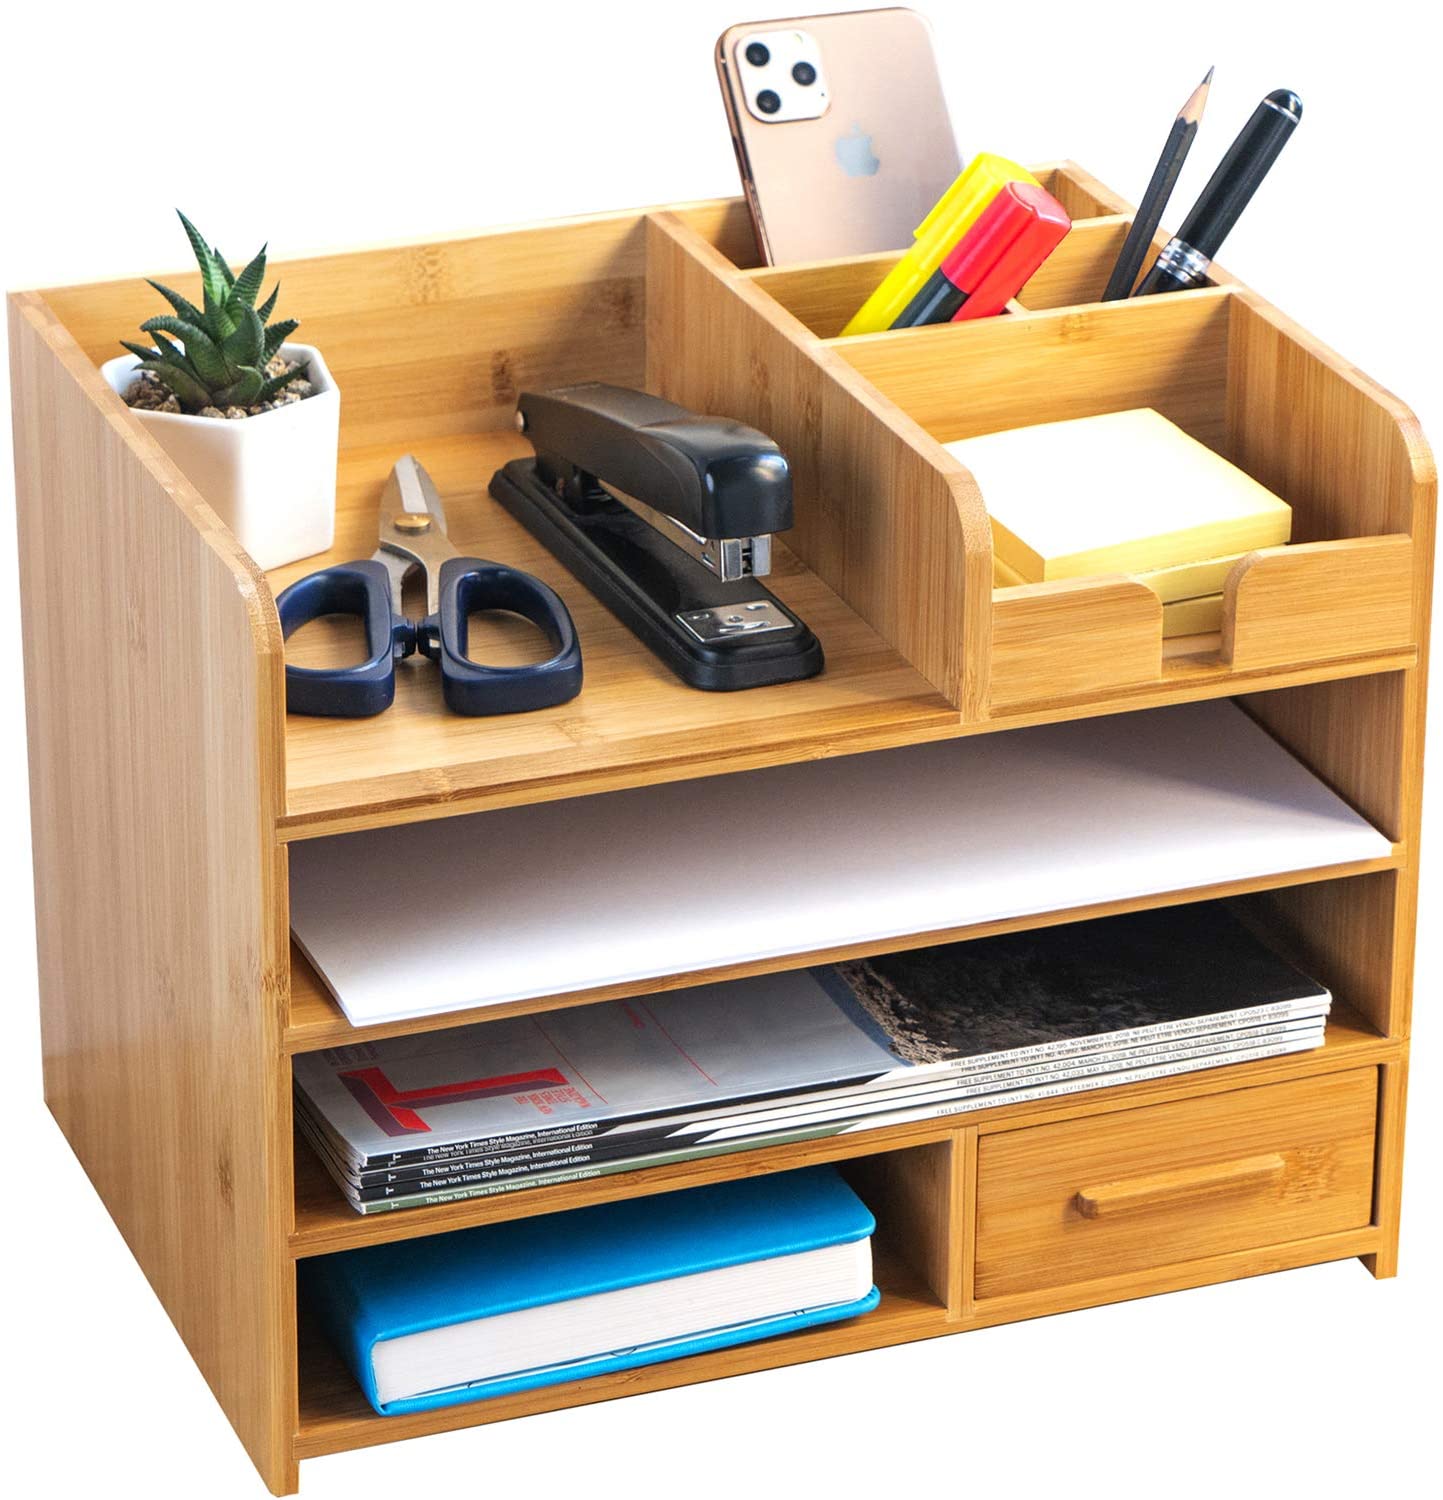 NEOLETEX Desk Organizer Tray And Shelf 